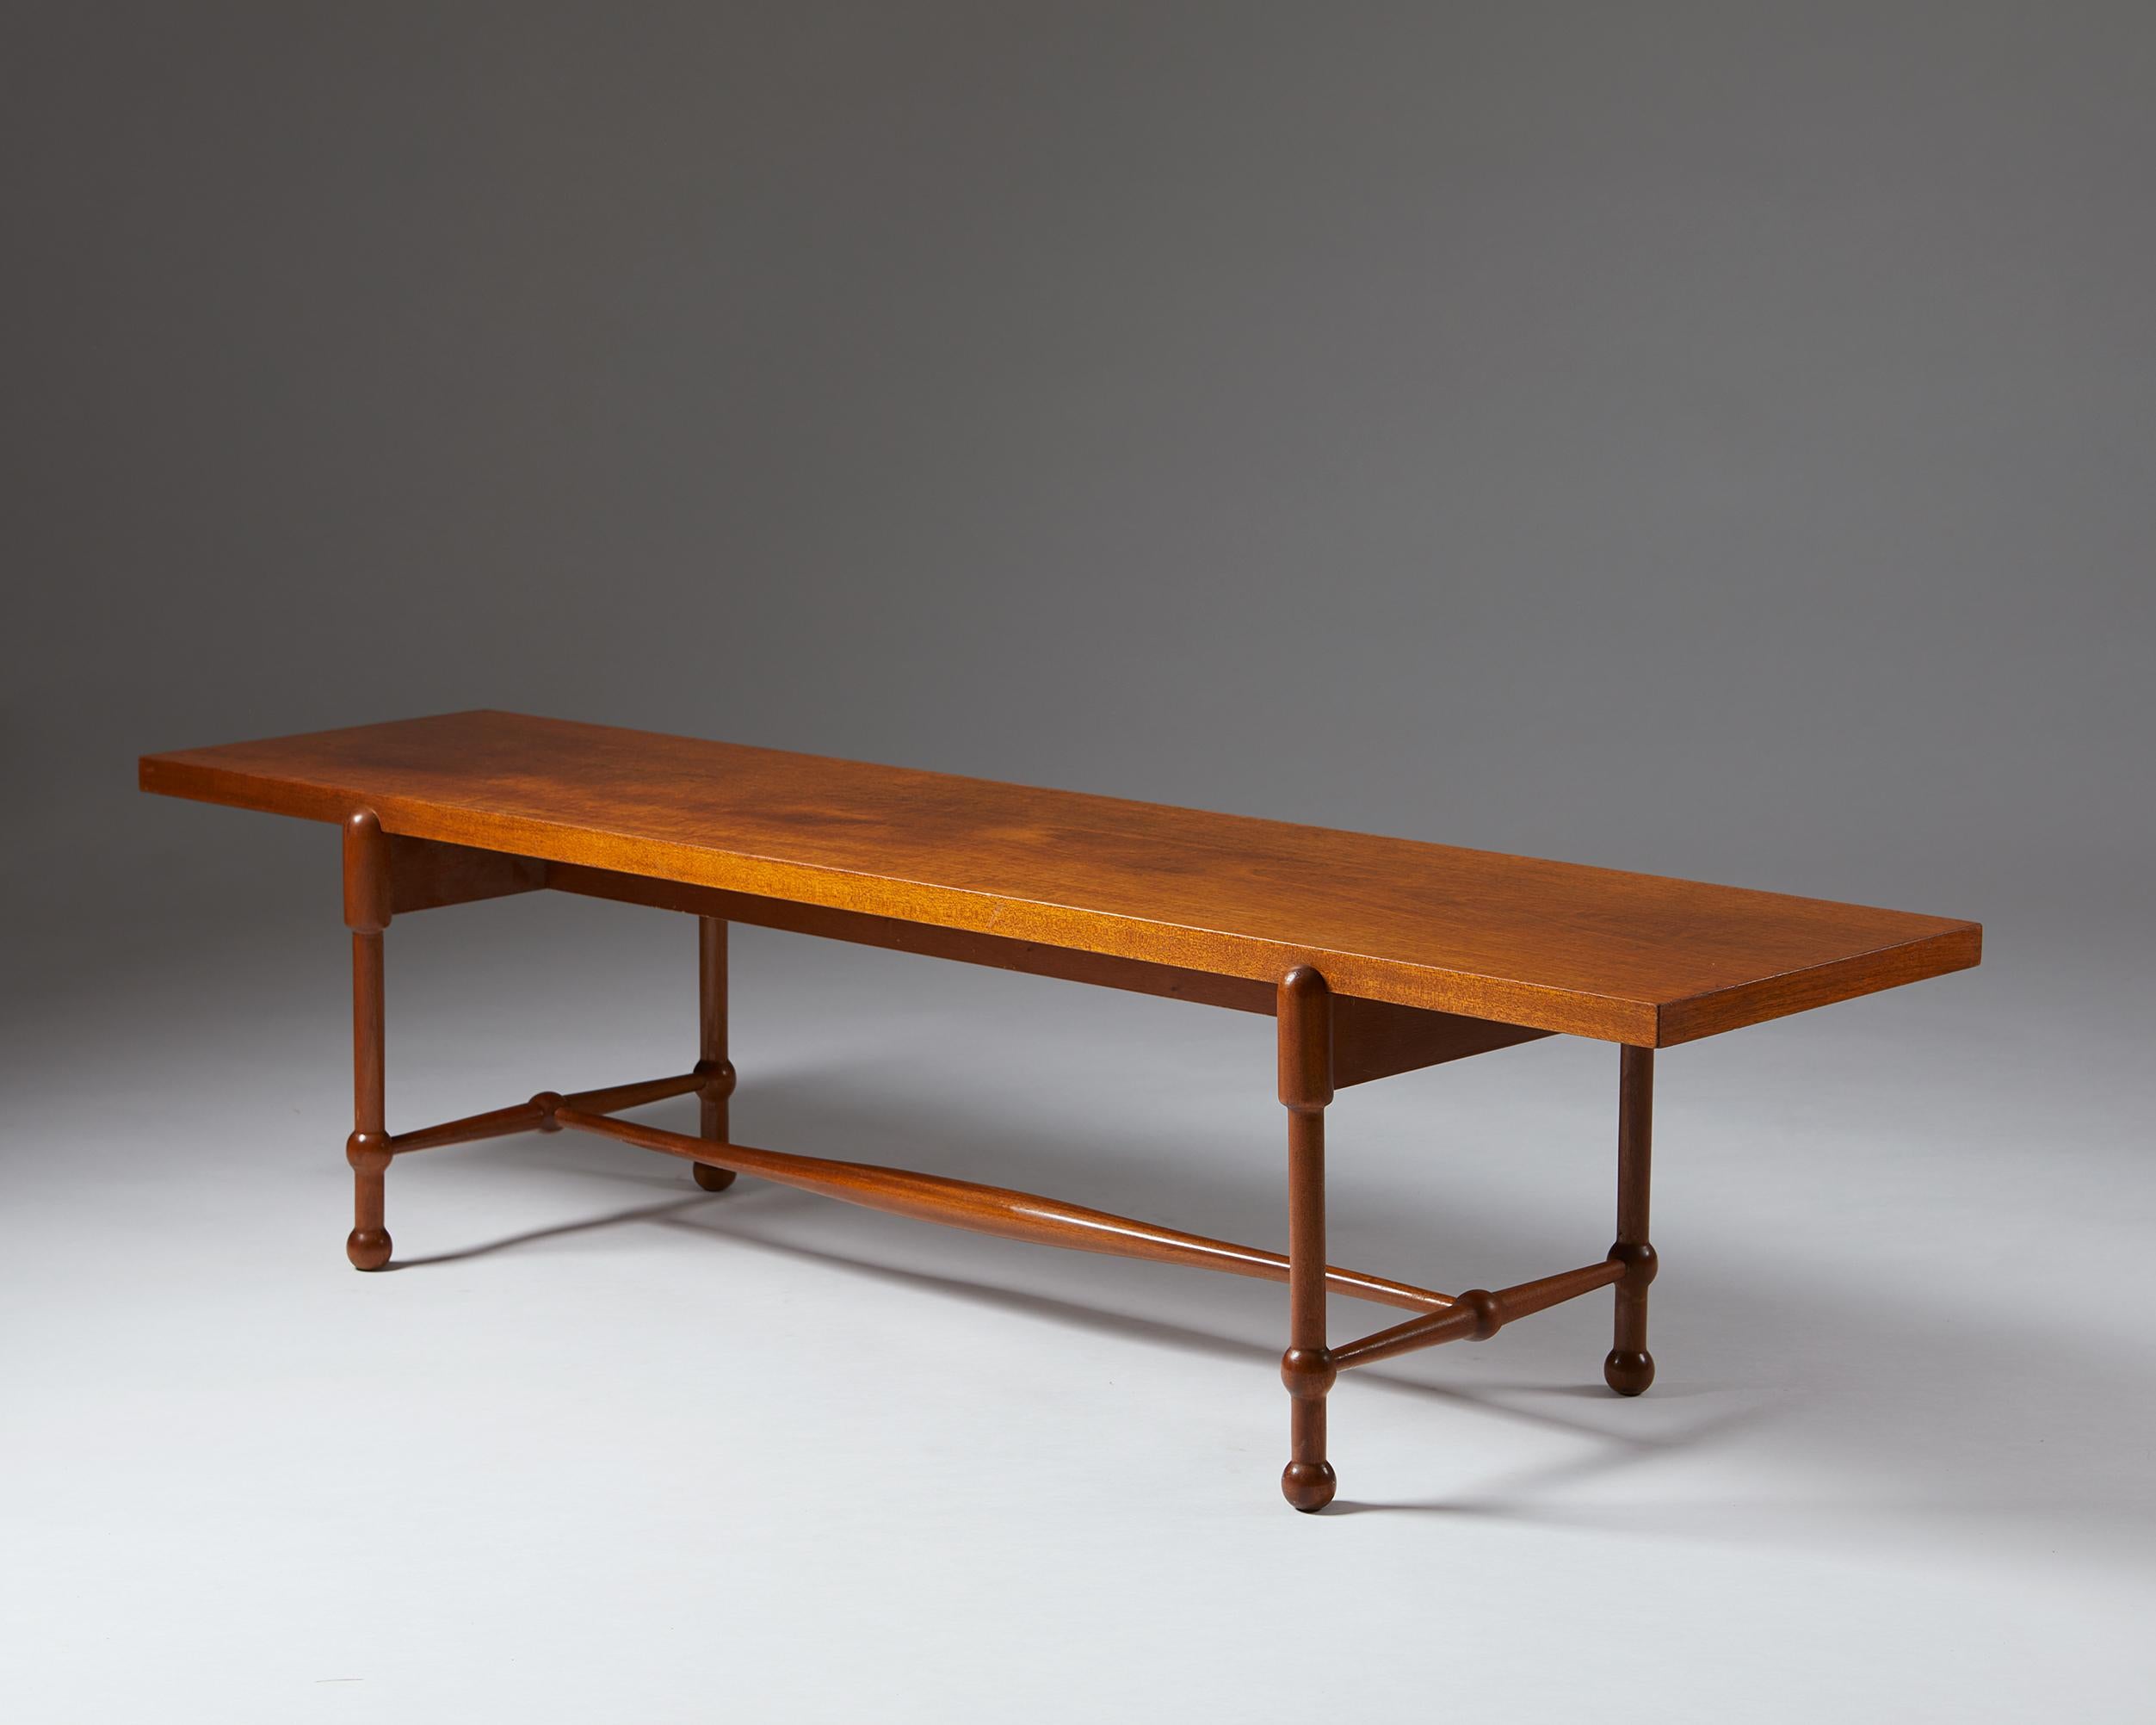 Scandinavian Modern Occasional Table Model 2180 Designed by Josef Frank for Svenskt Tenn, Sweden